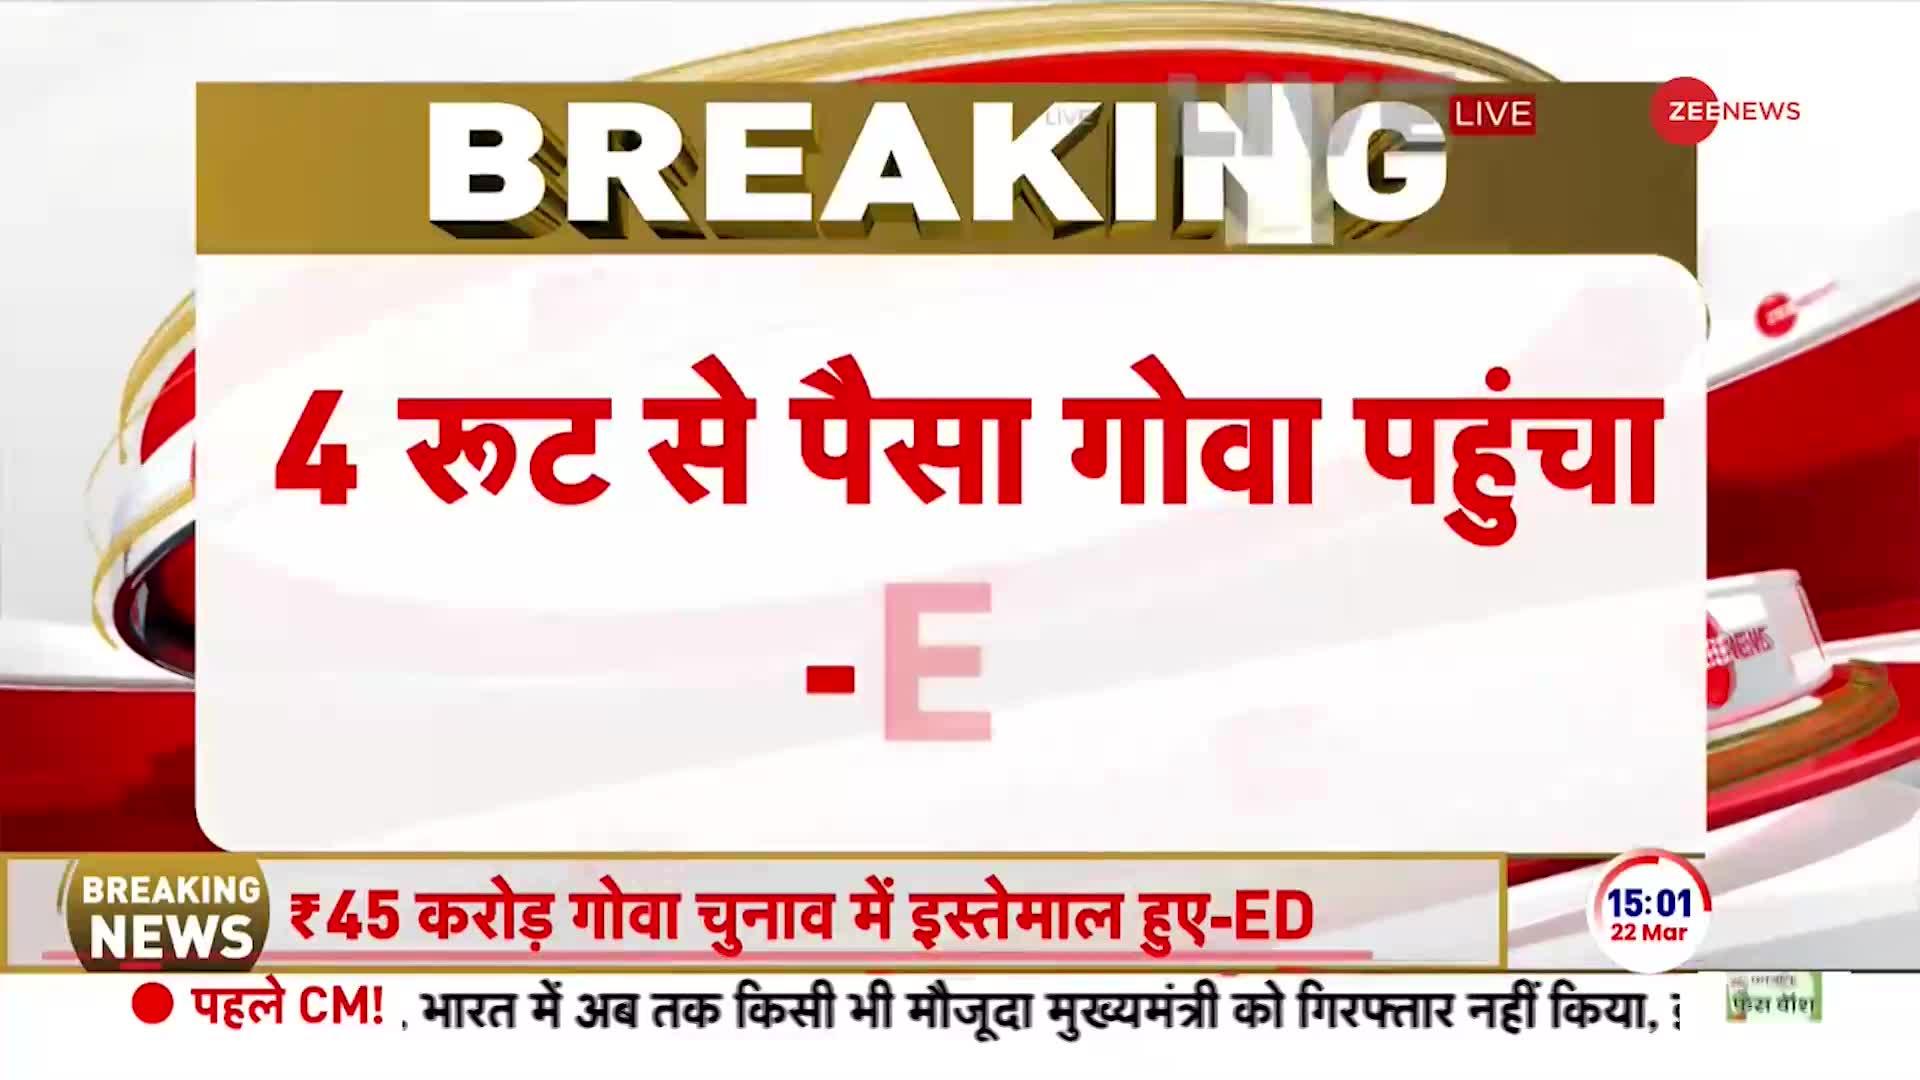 CM Arvind Kejriwal in Court: पूछताछ करनी है, केजरीवाल को रिमांड दें- ED